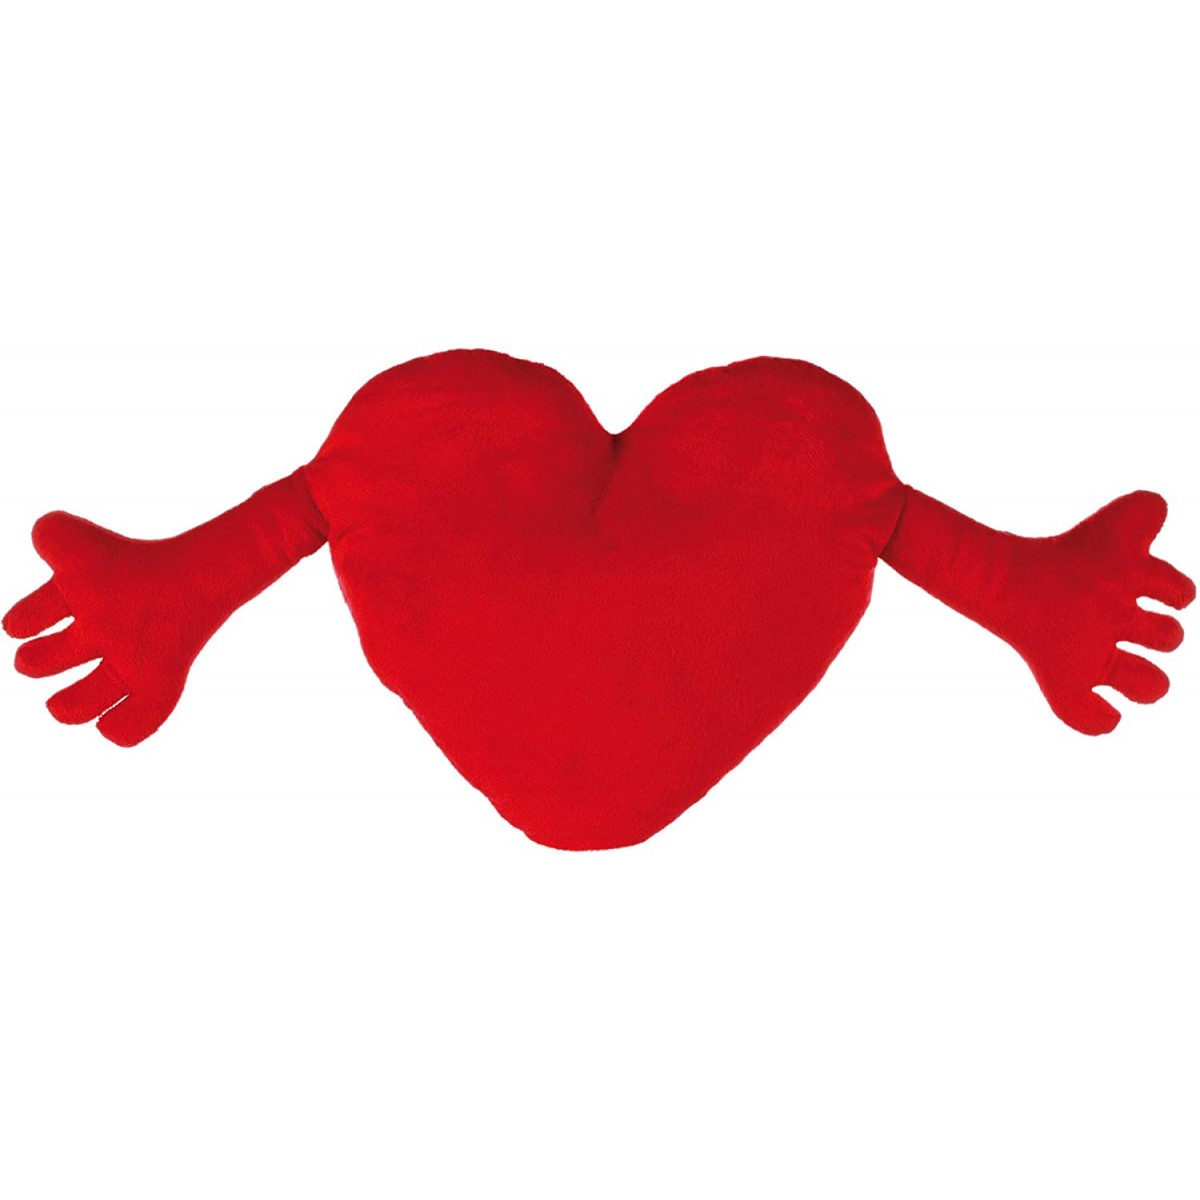 cuscino rosso a forma di cuore con lettere ricamate 7 misure 1926 regalo per San Valentino LIskybird matrimonio casa in morbido peluche decorazione per divano 